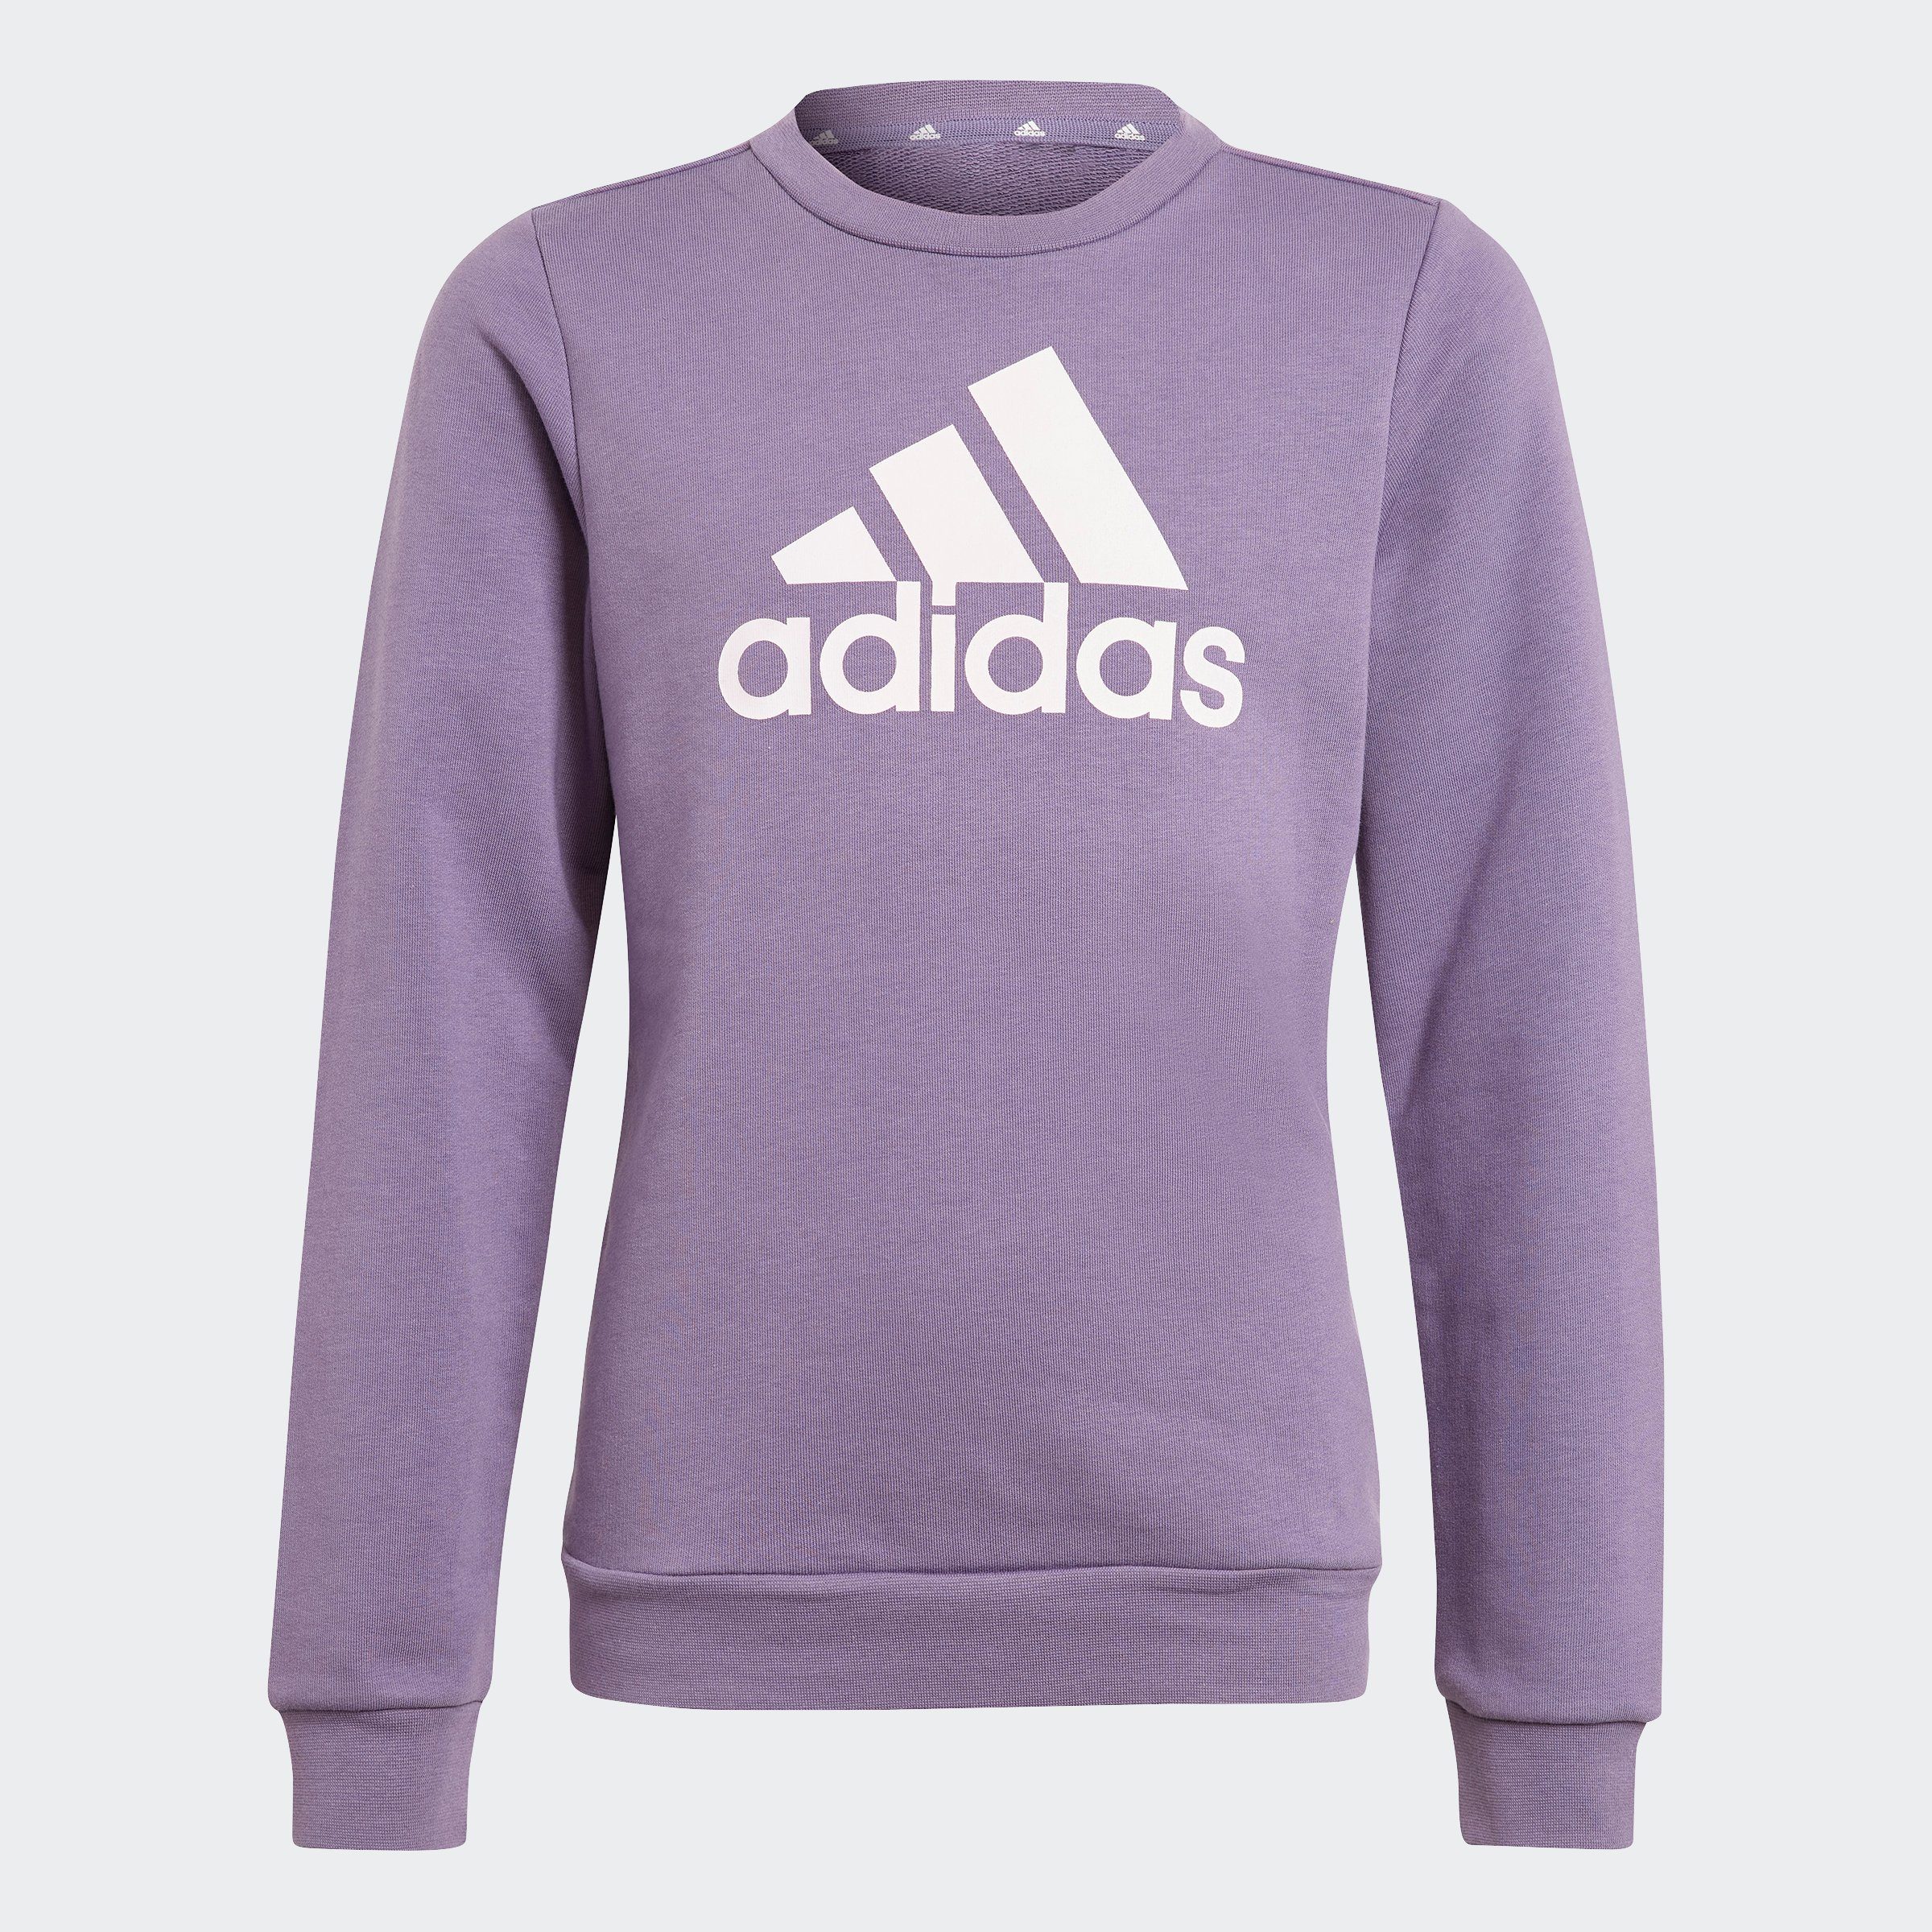 violet-clear BL G shadow SWT Sportswear adidas pink Sweatshirt